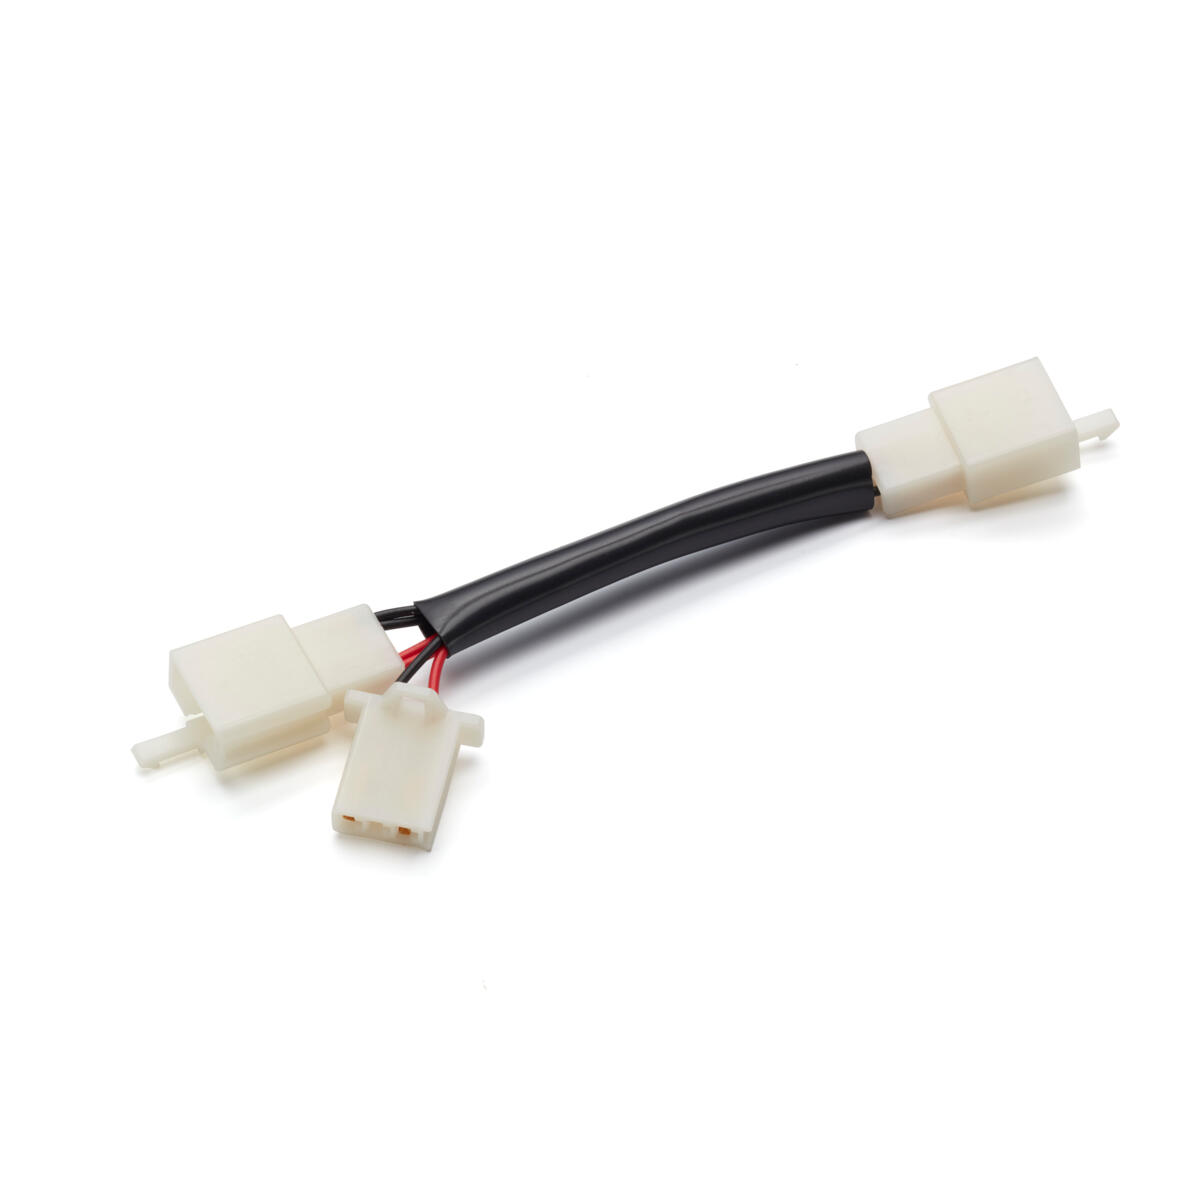 Připojovací kabel pro snadné připojení volitelného USB adaptéru.